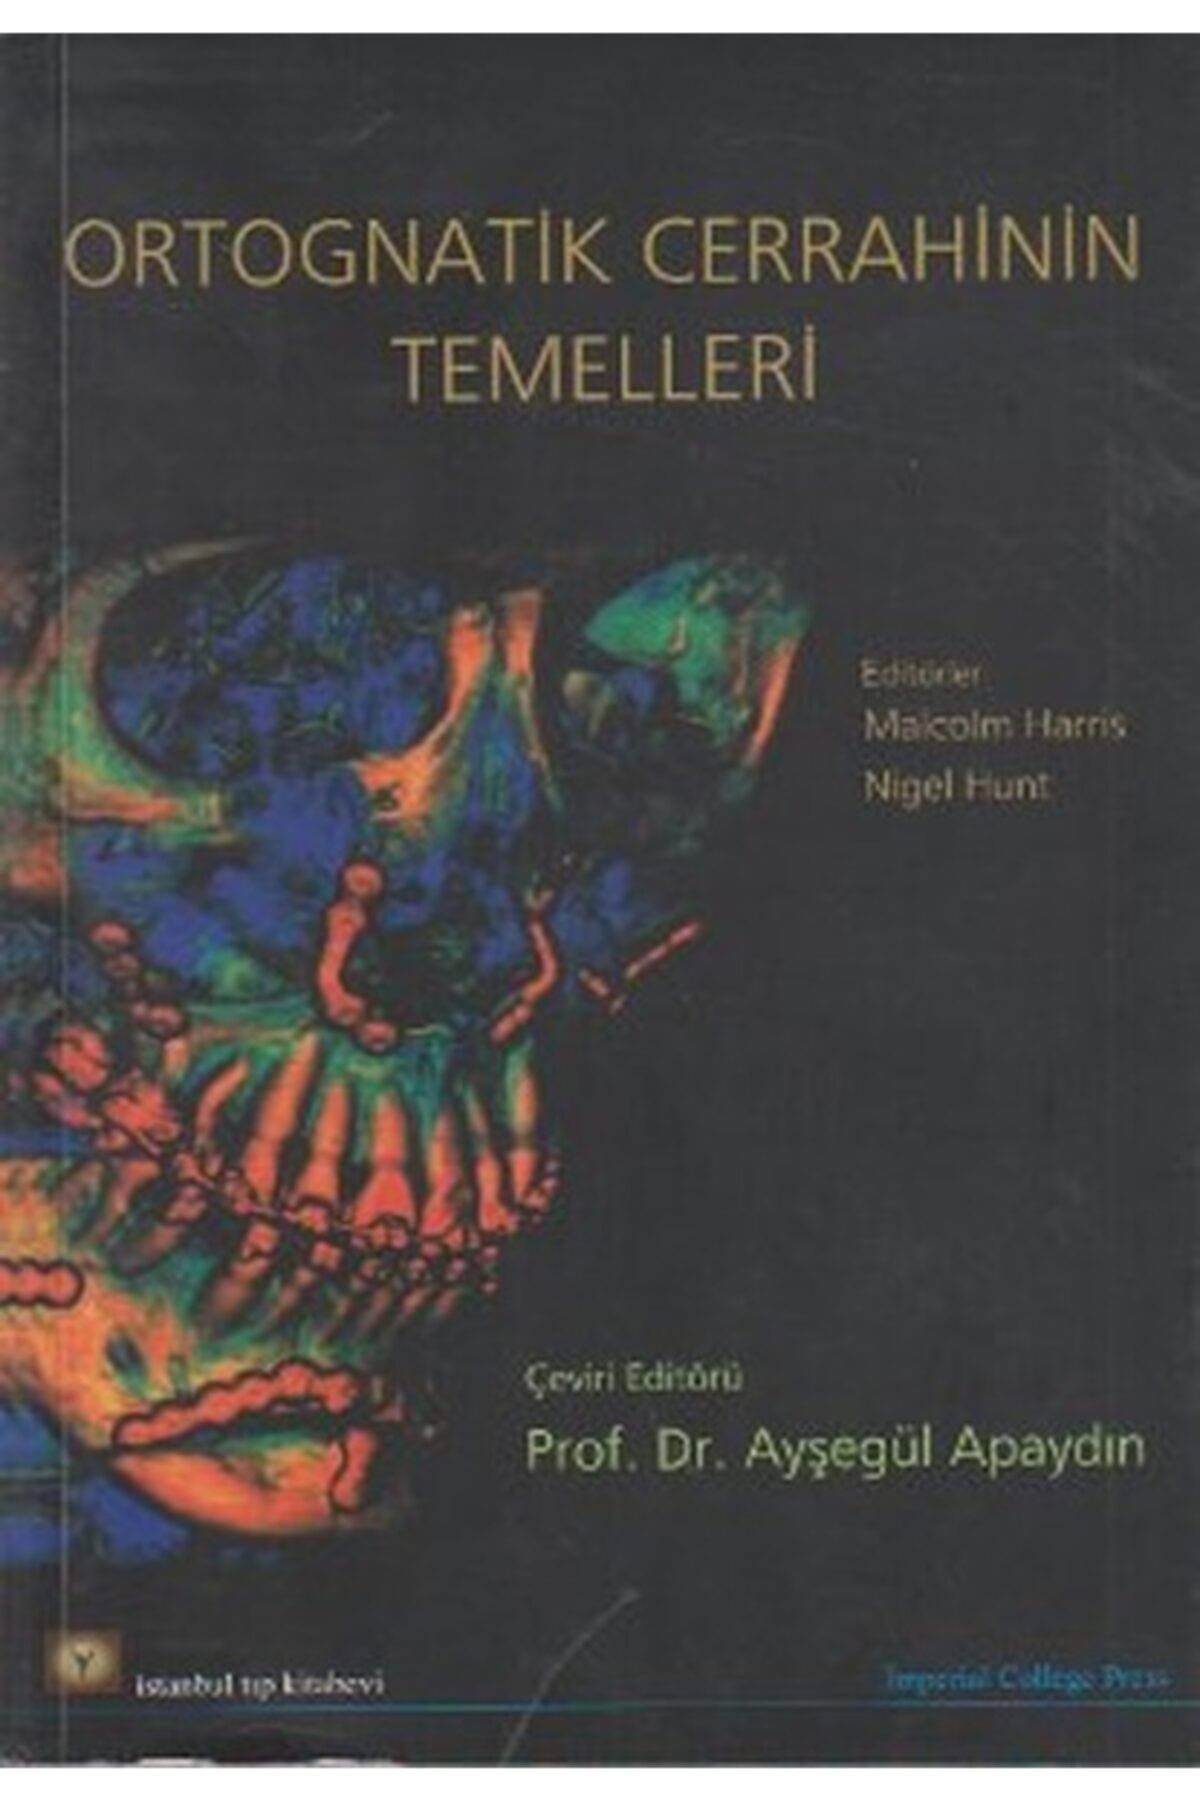 İstanbul Tıp Kitabevi Ortognatik Cerrahinin Temelleri